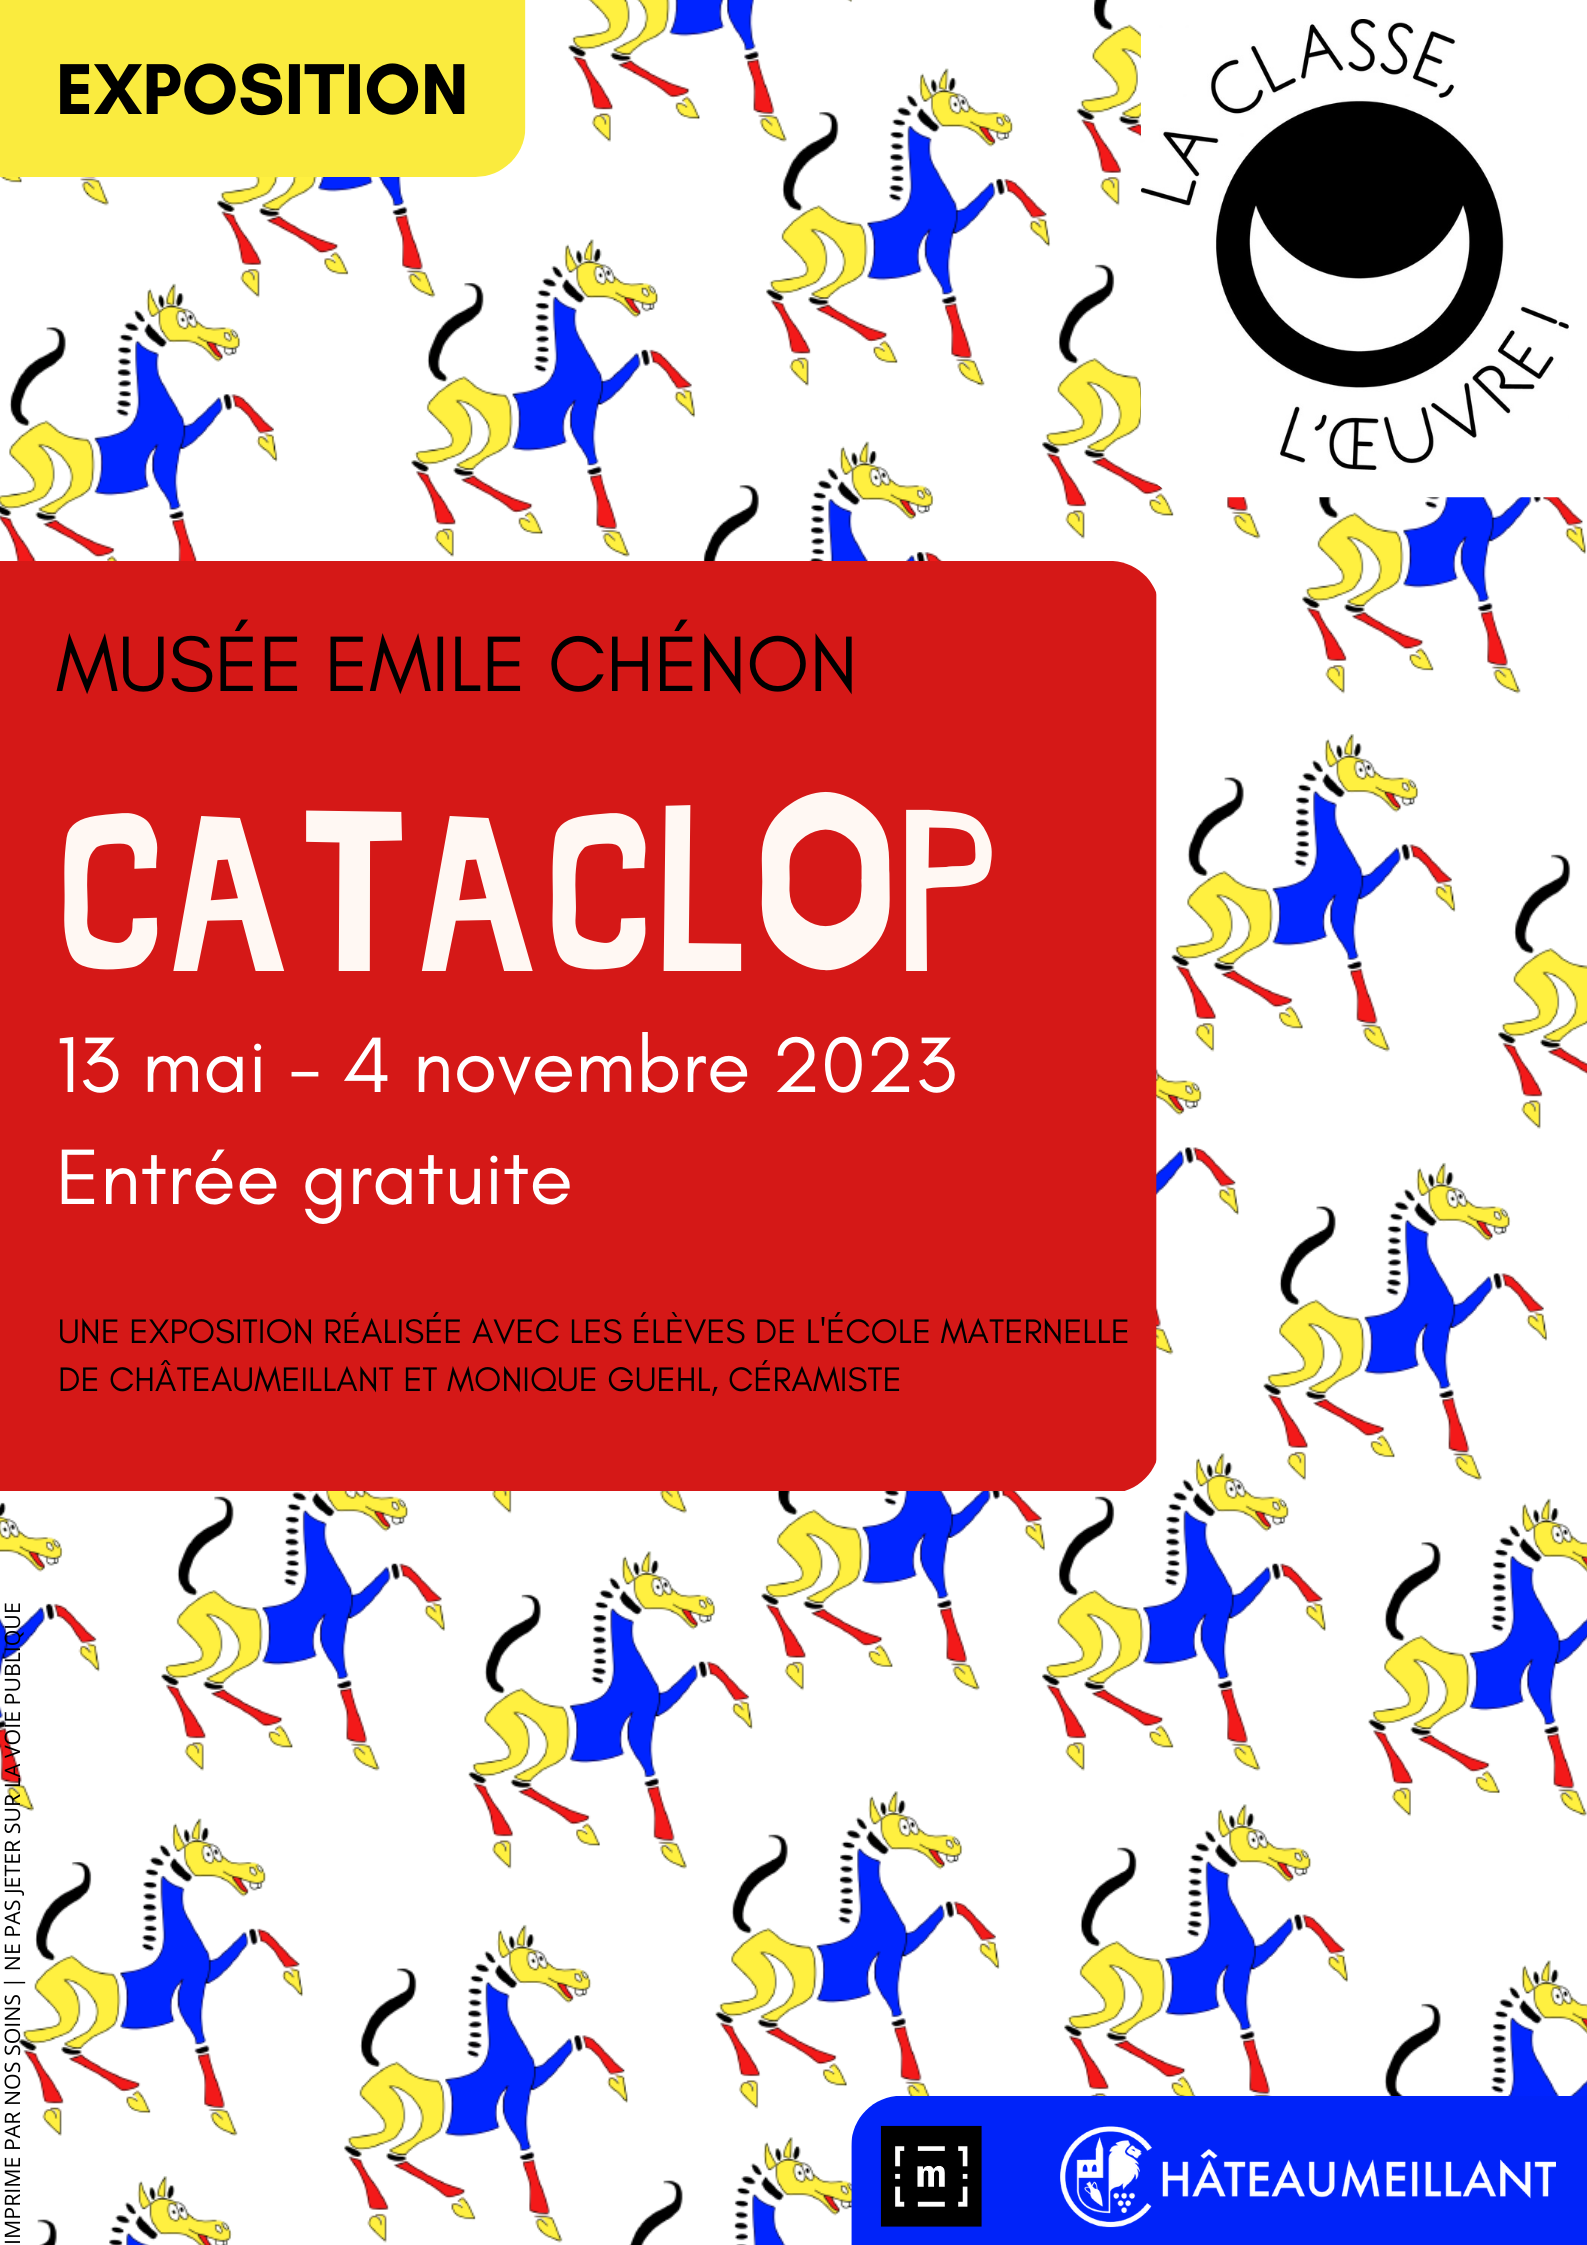 Exposition CATACLOP Musée Emile Chenon